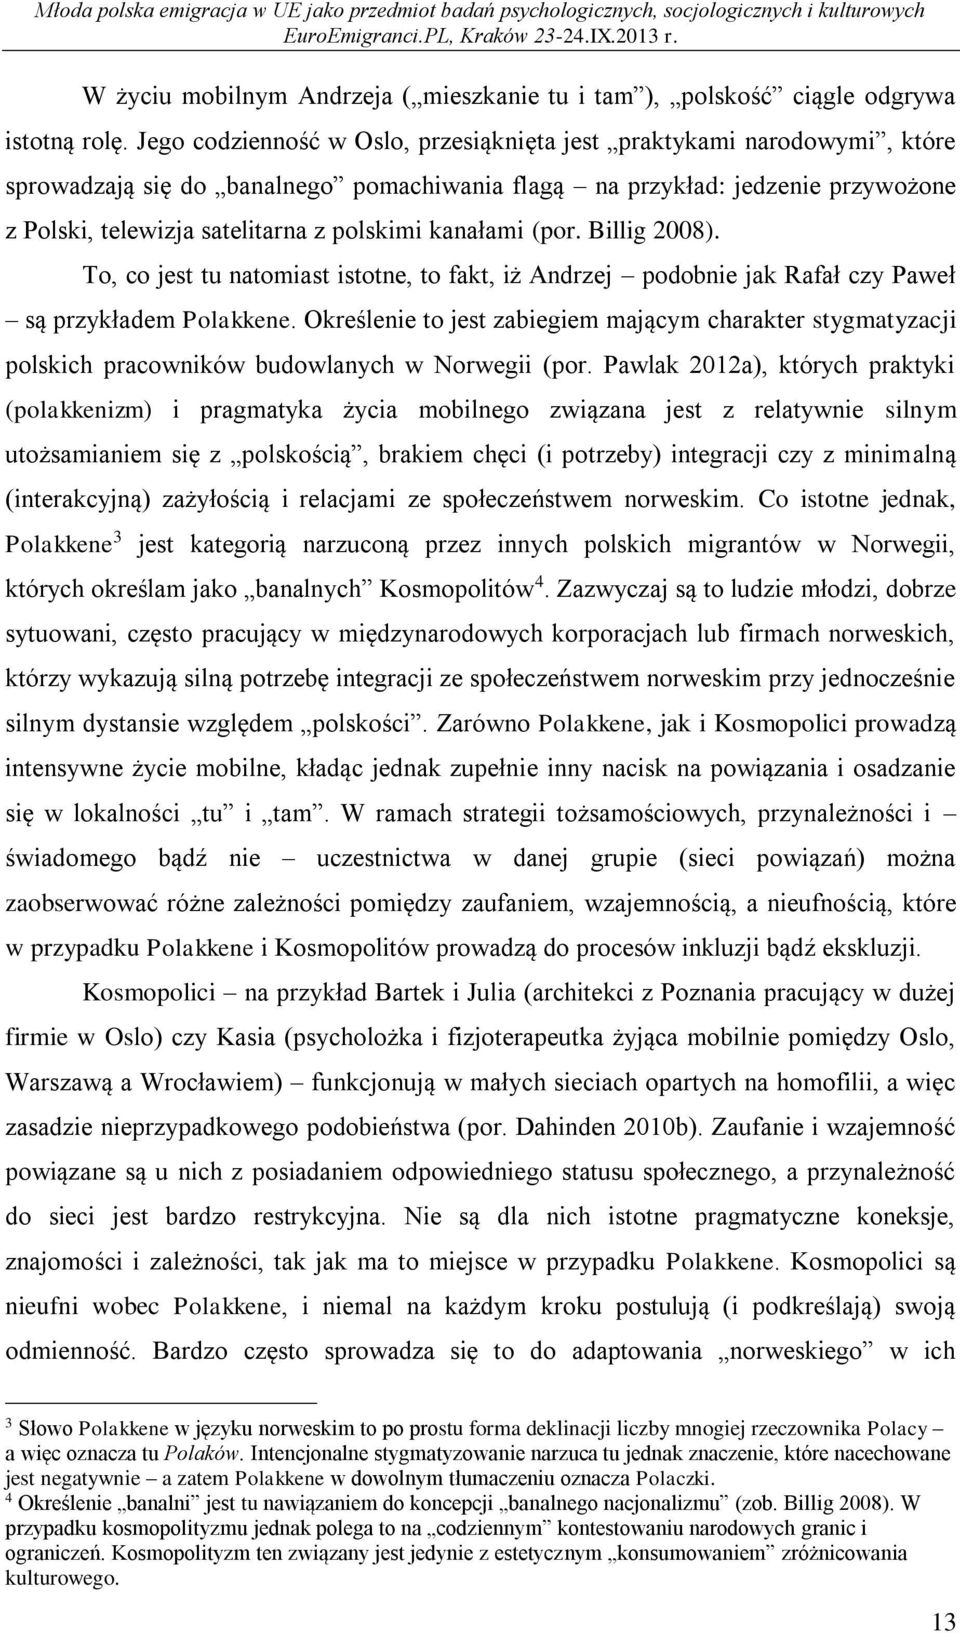 kanałami (por. Billig 2008). To, co jest tu natomiast istotne, to fakt, iż Andrzej podobnie jak Rafał czy Paweł są przykładem Polakkene.